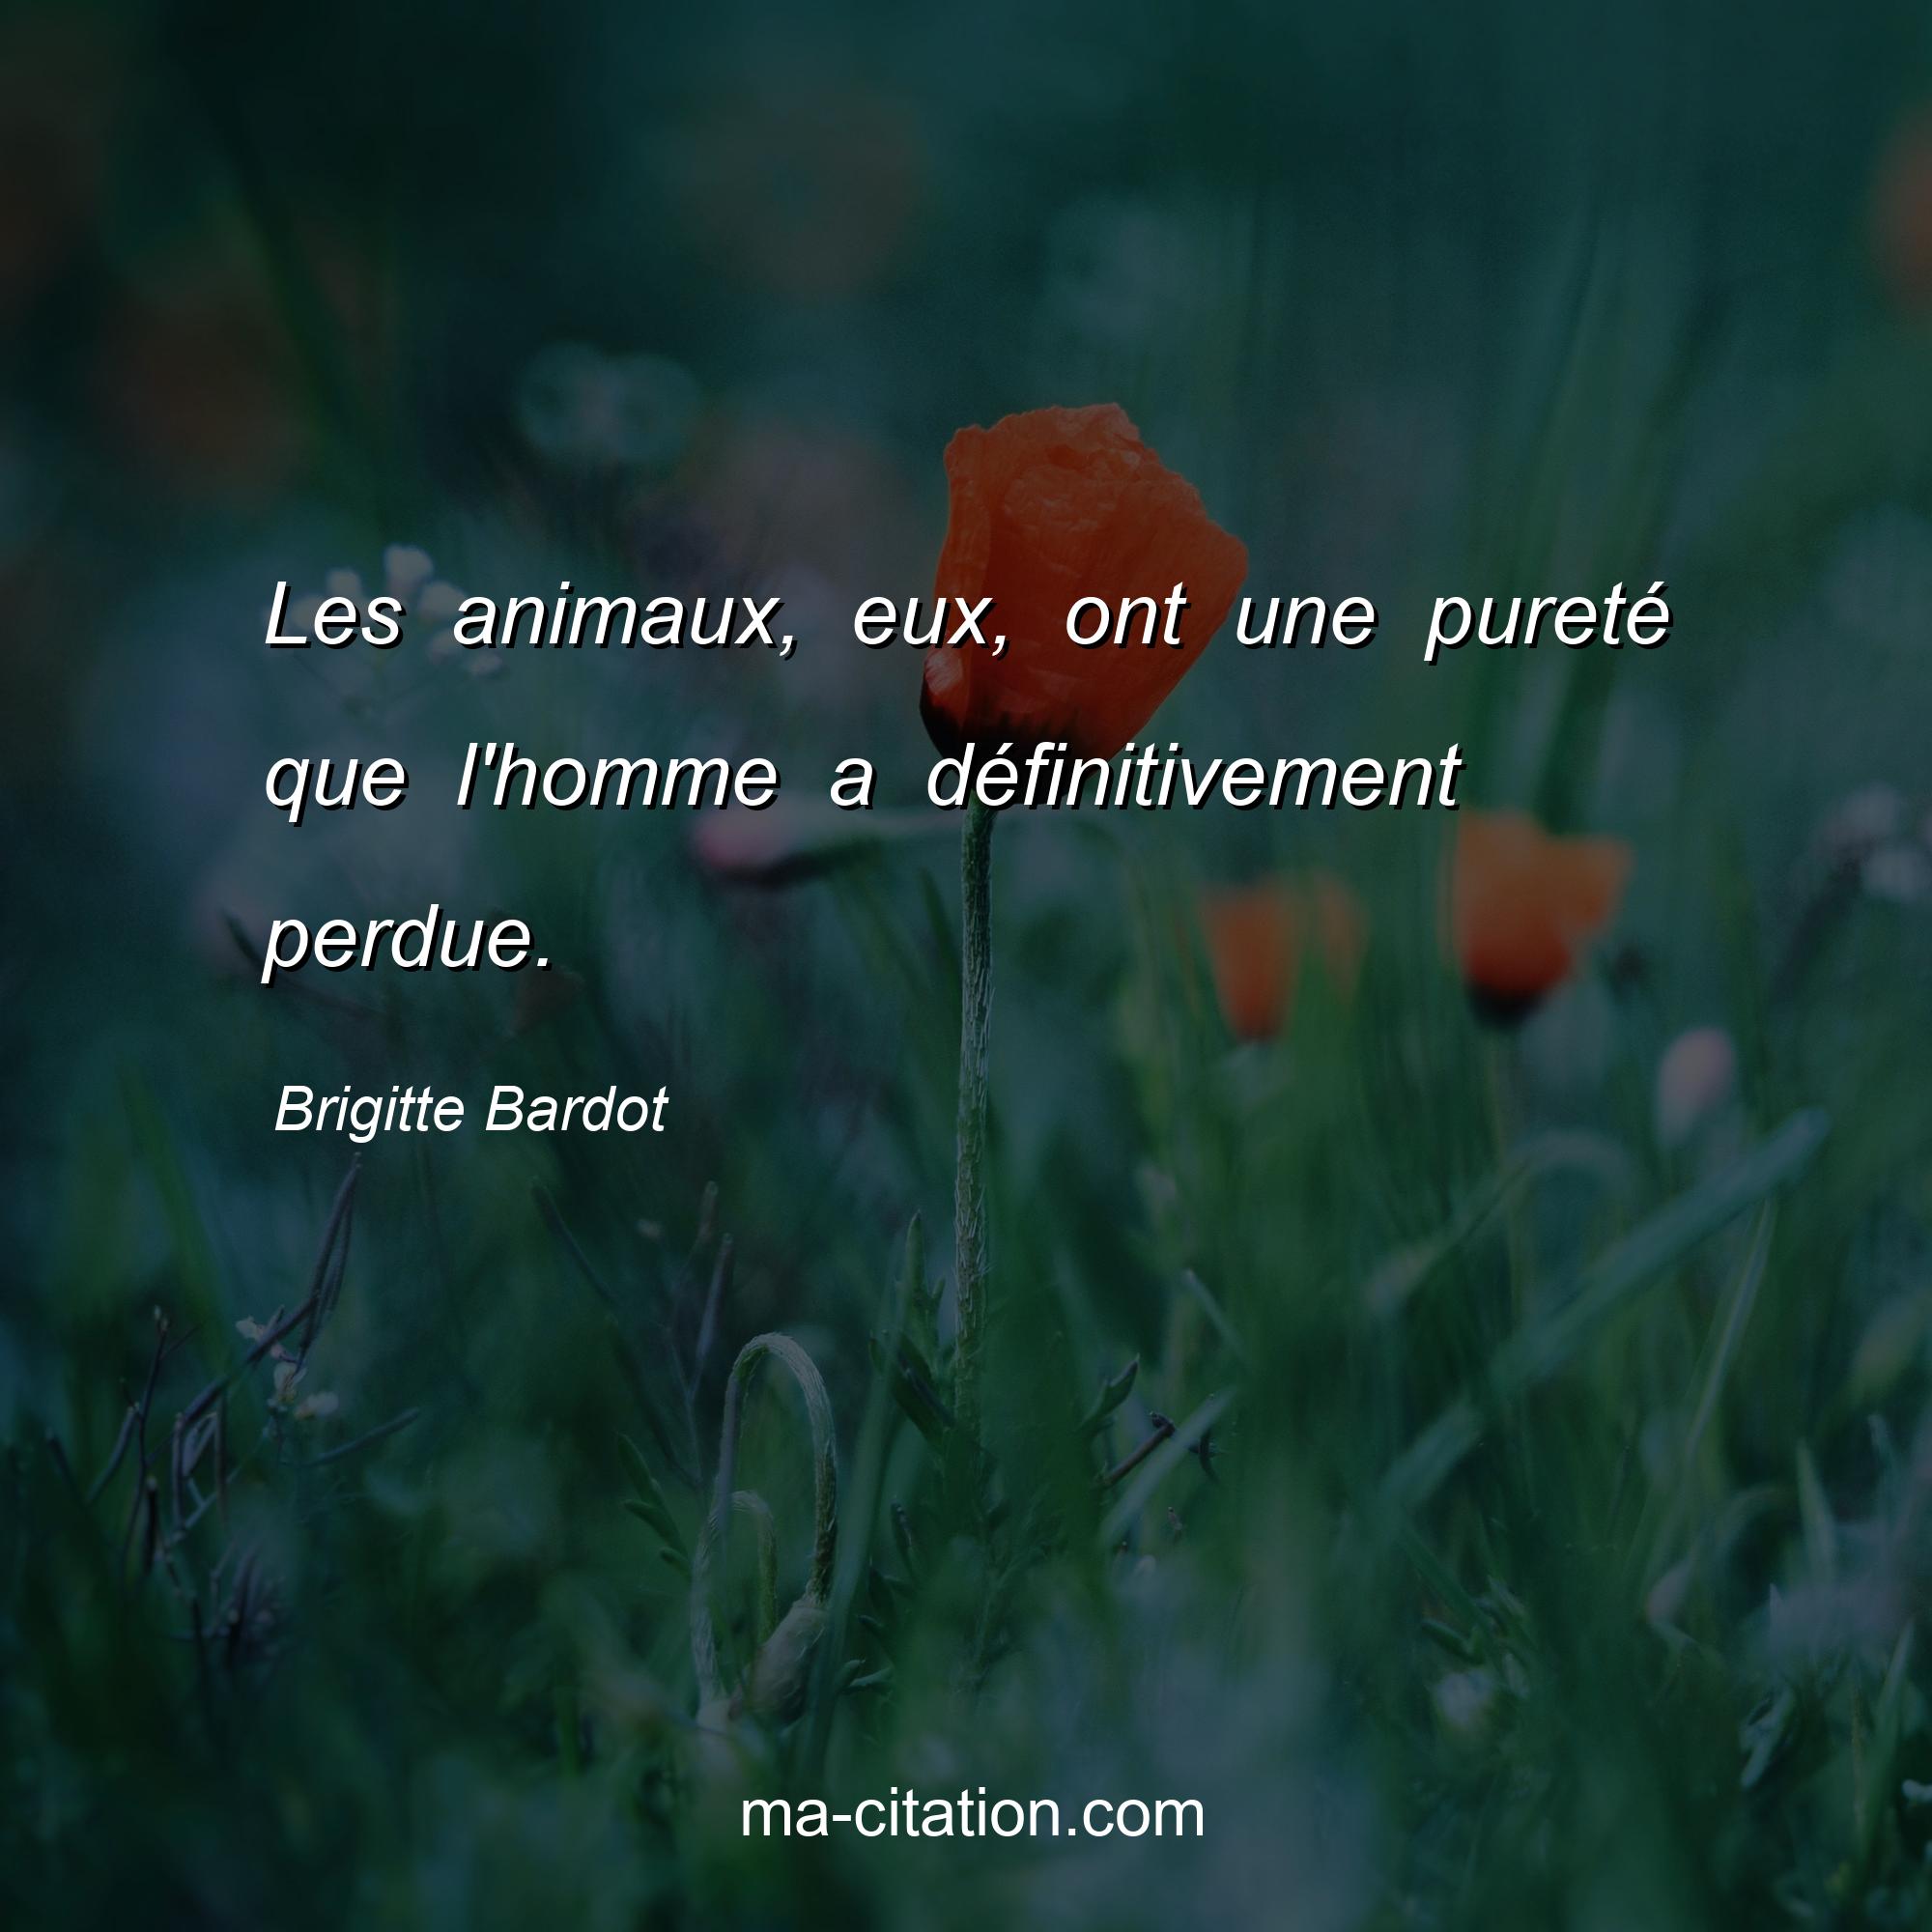 Brigitte Bardot : Les animaux, eux, ont une pureté que l'homme a définitivement perdue.